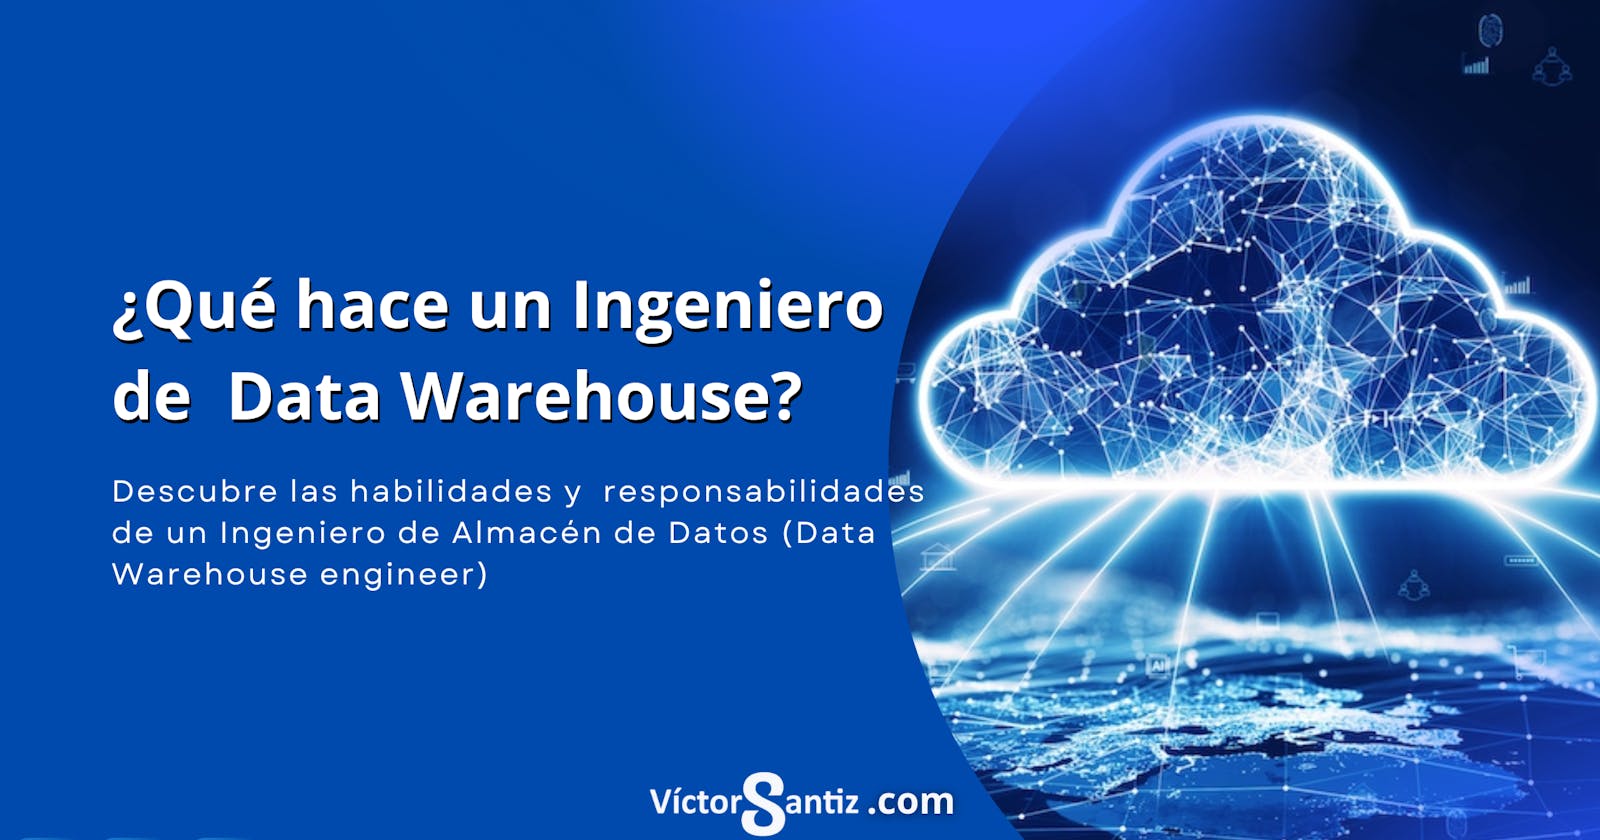 ¿Qué hace un ingeniero de Almacén de Datos (Data warehouse Engineer)?